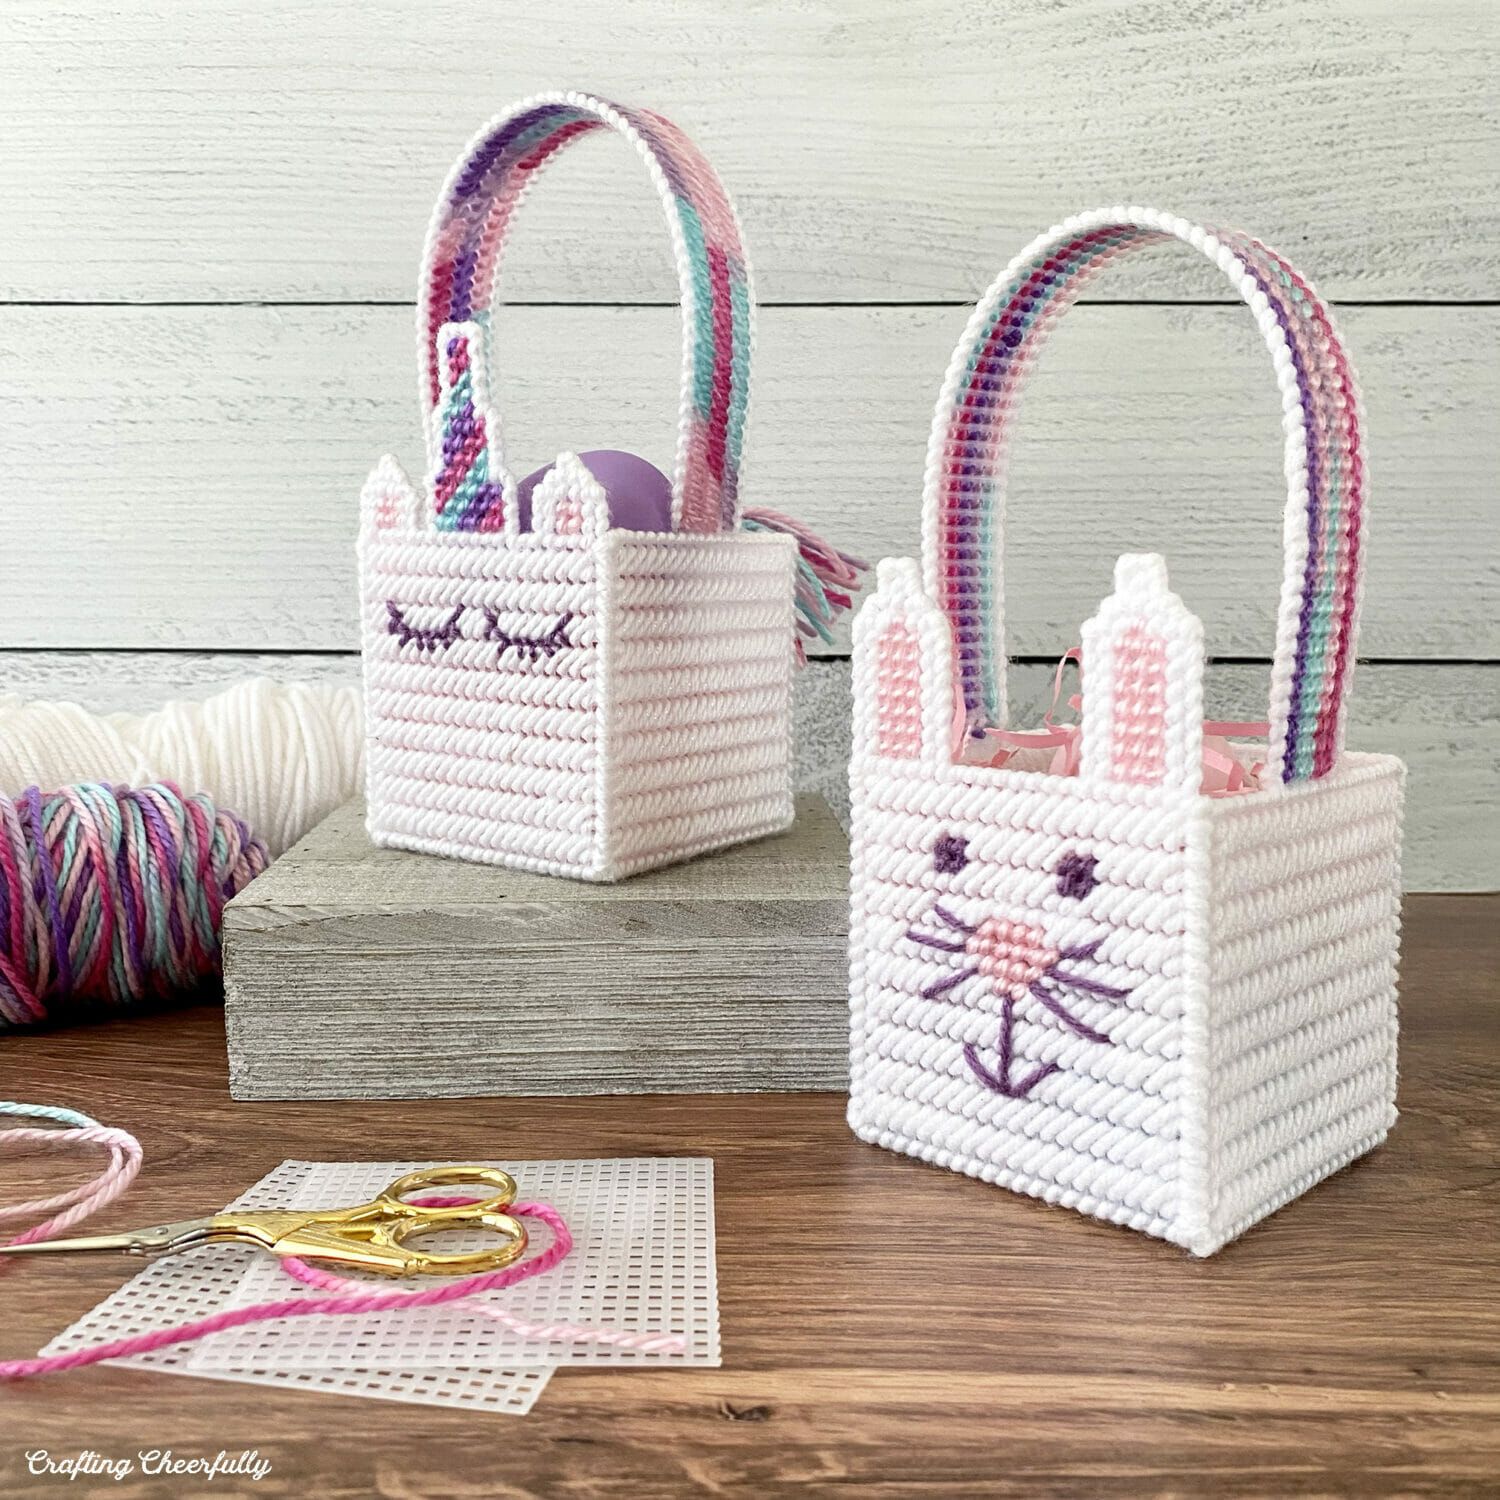 Cool DIY Gift For Kids - Basket Of Handmade Soft Felt Toys